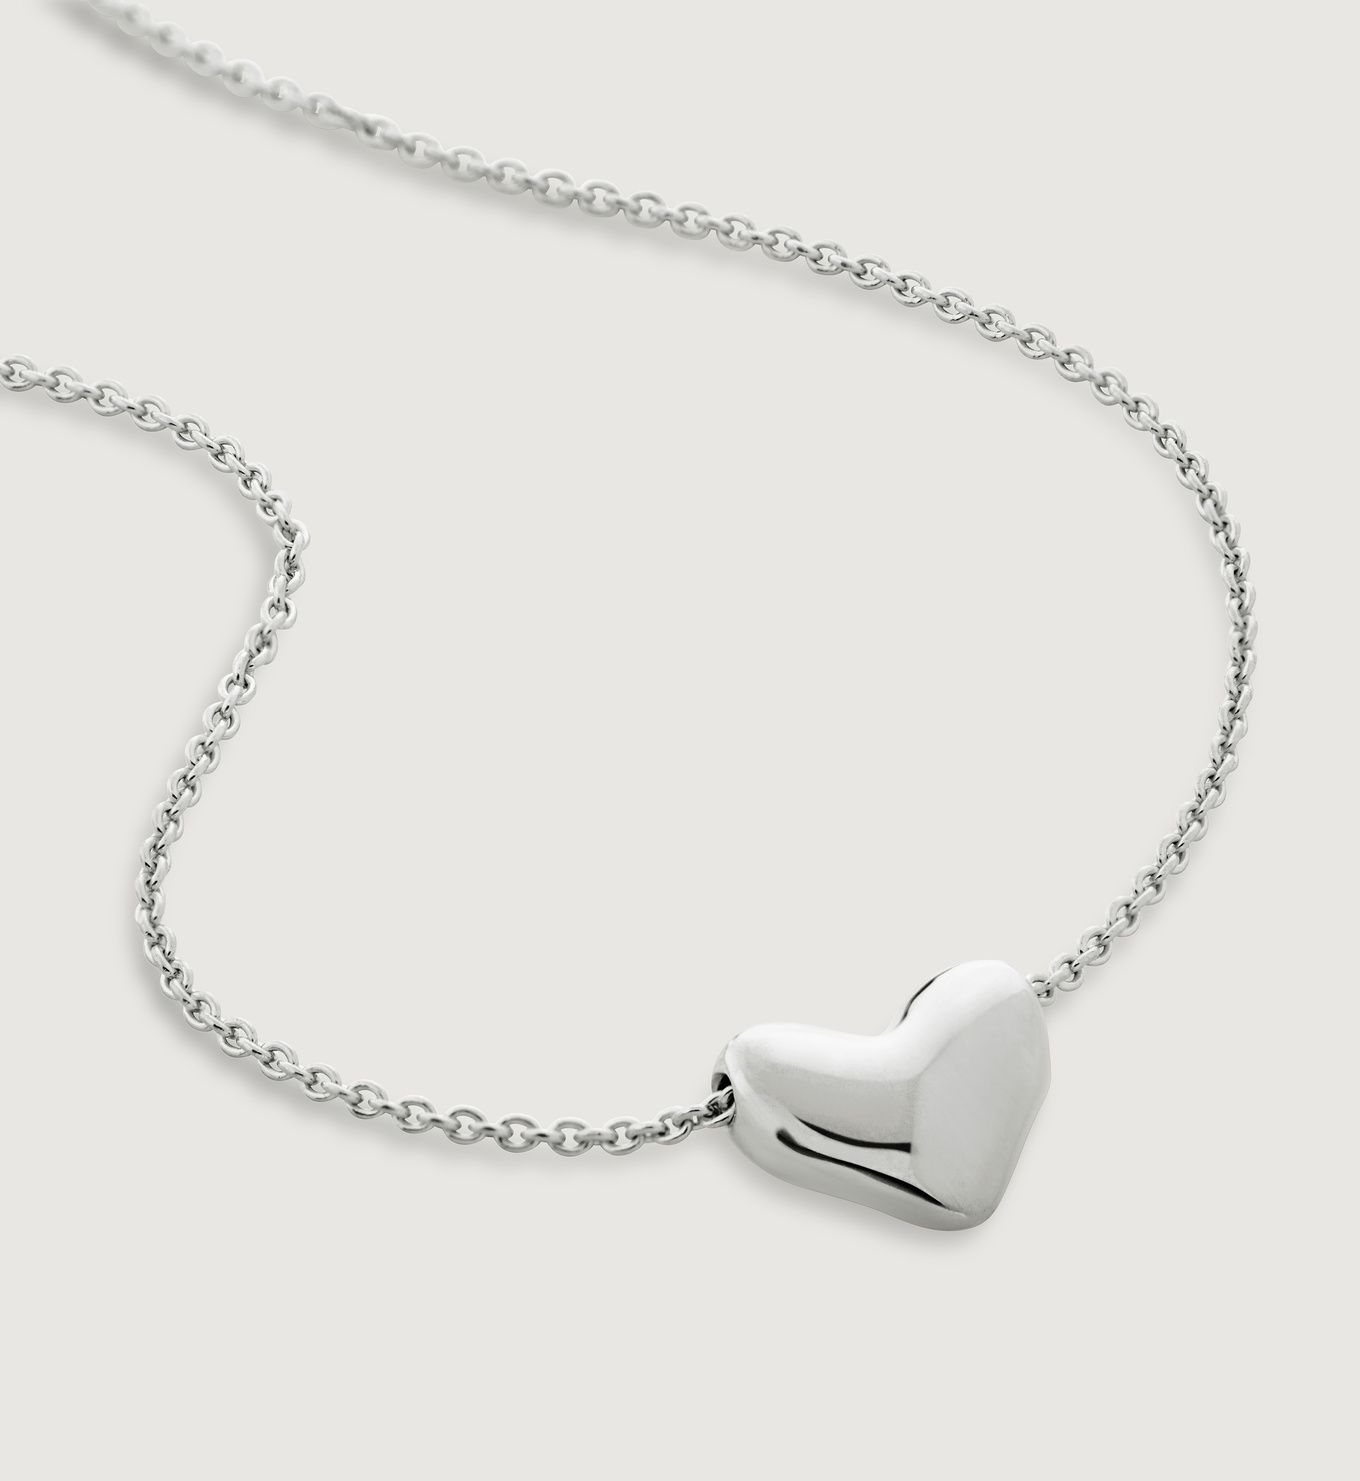 Heart Chain Necklace Adjustable 41-46cm/16-18' | Monica Vinader (Global)